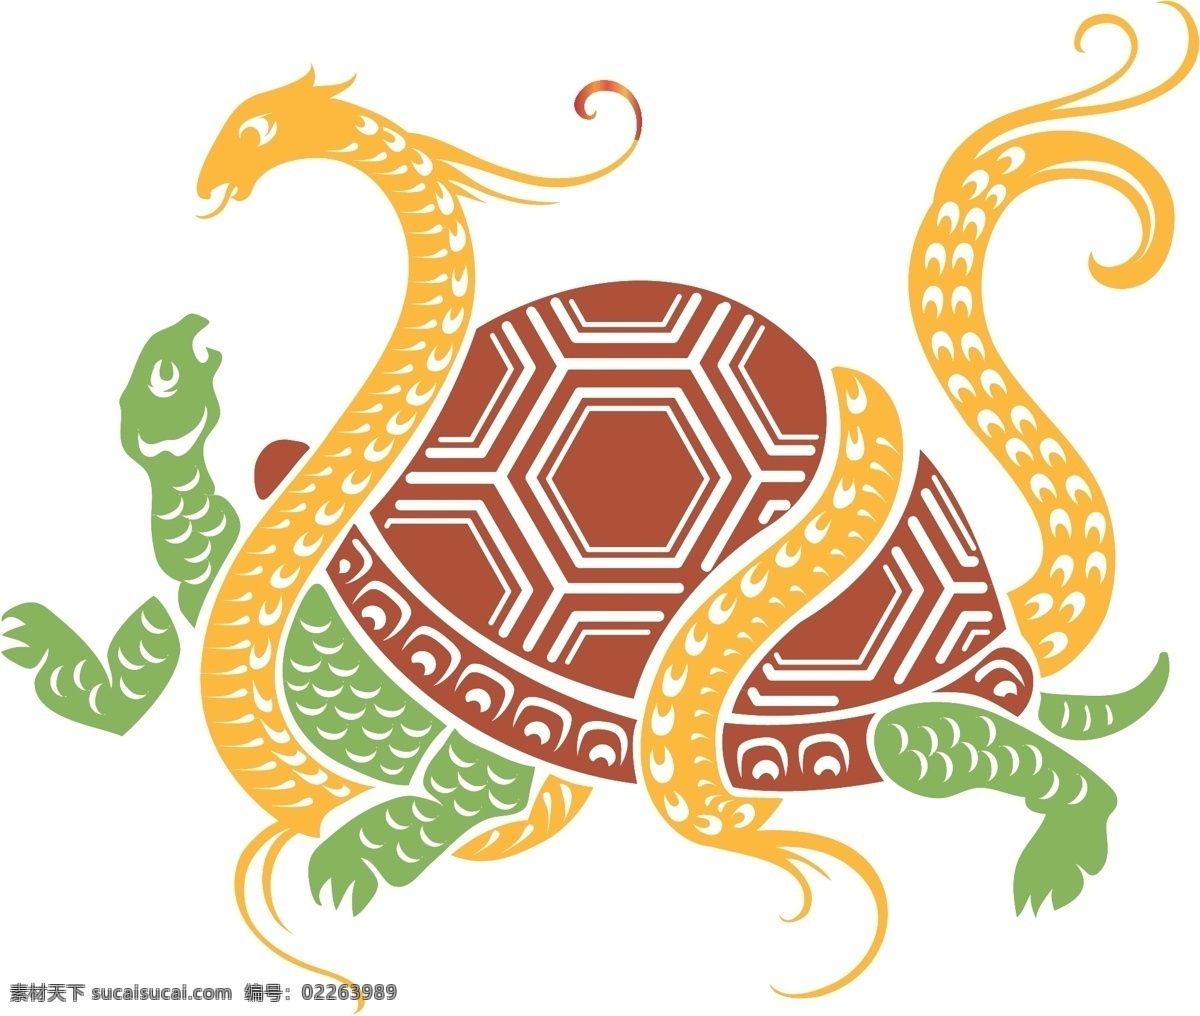 龟蛇二将 剪纸 古典纹样 真武大帝 神话 中国风纹样 文化艺术 传统文化